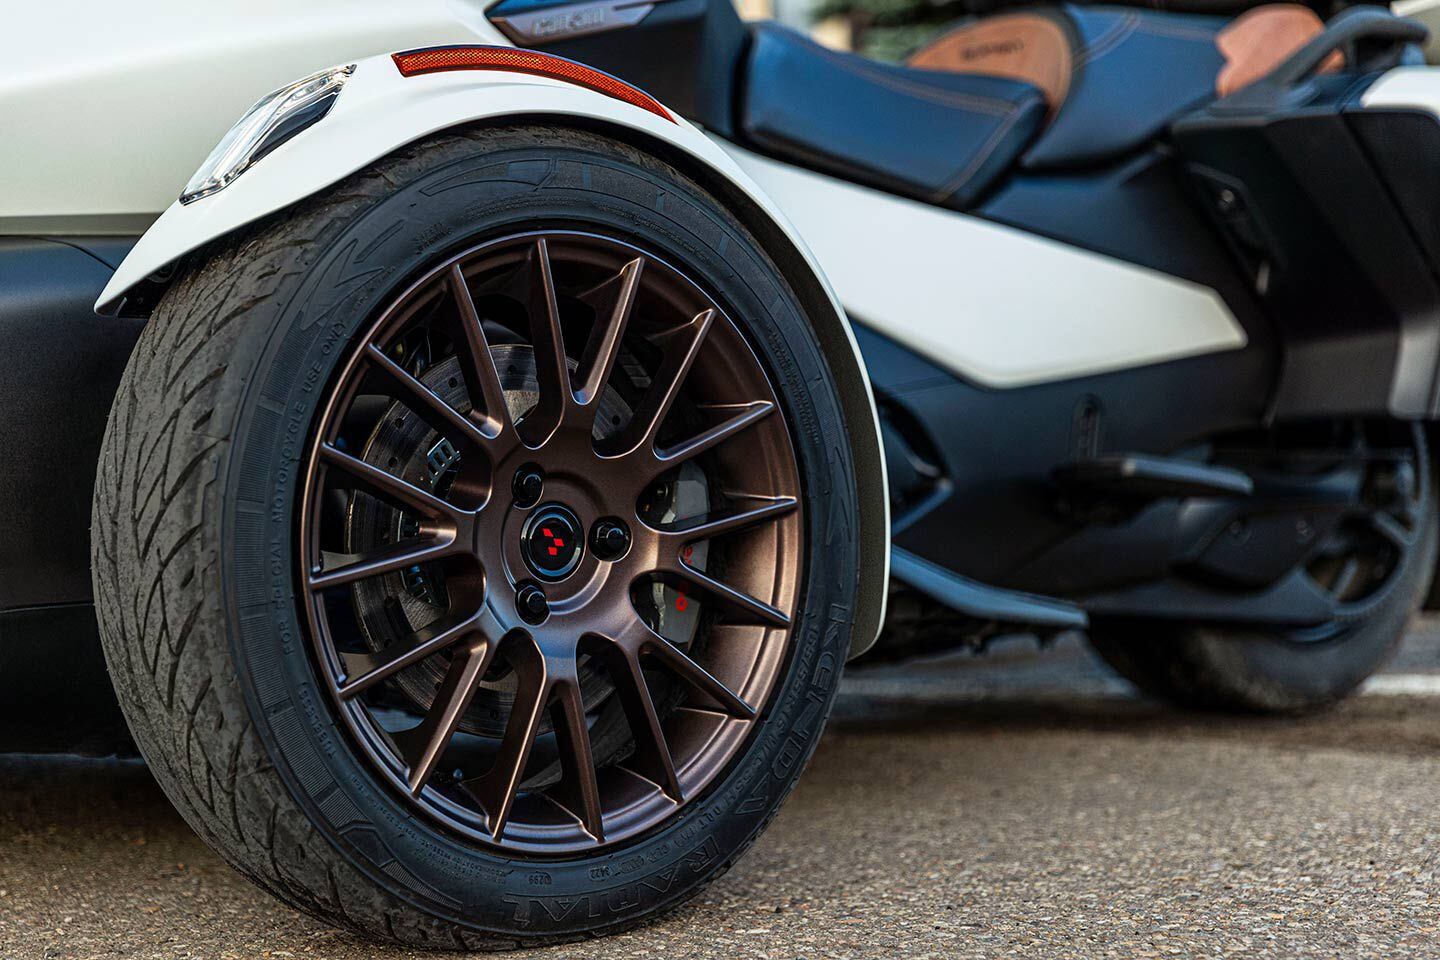 The 16-spoke Moka wheels lookin’ classy.